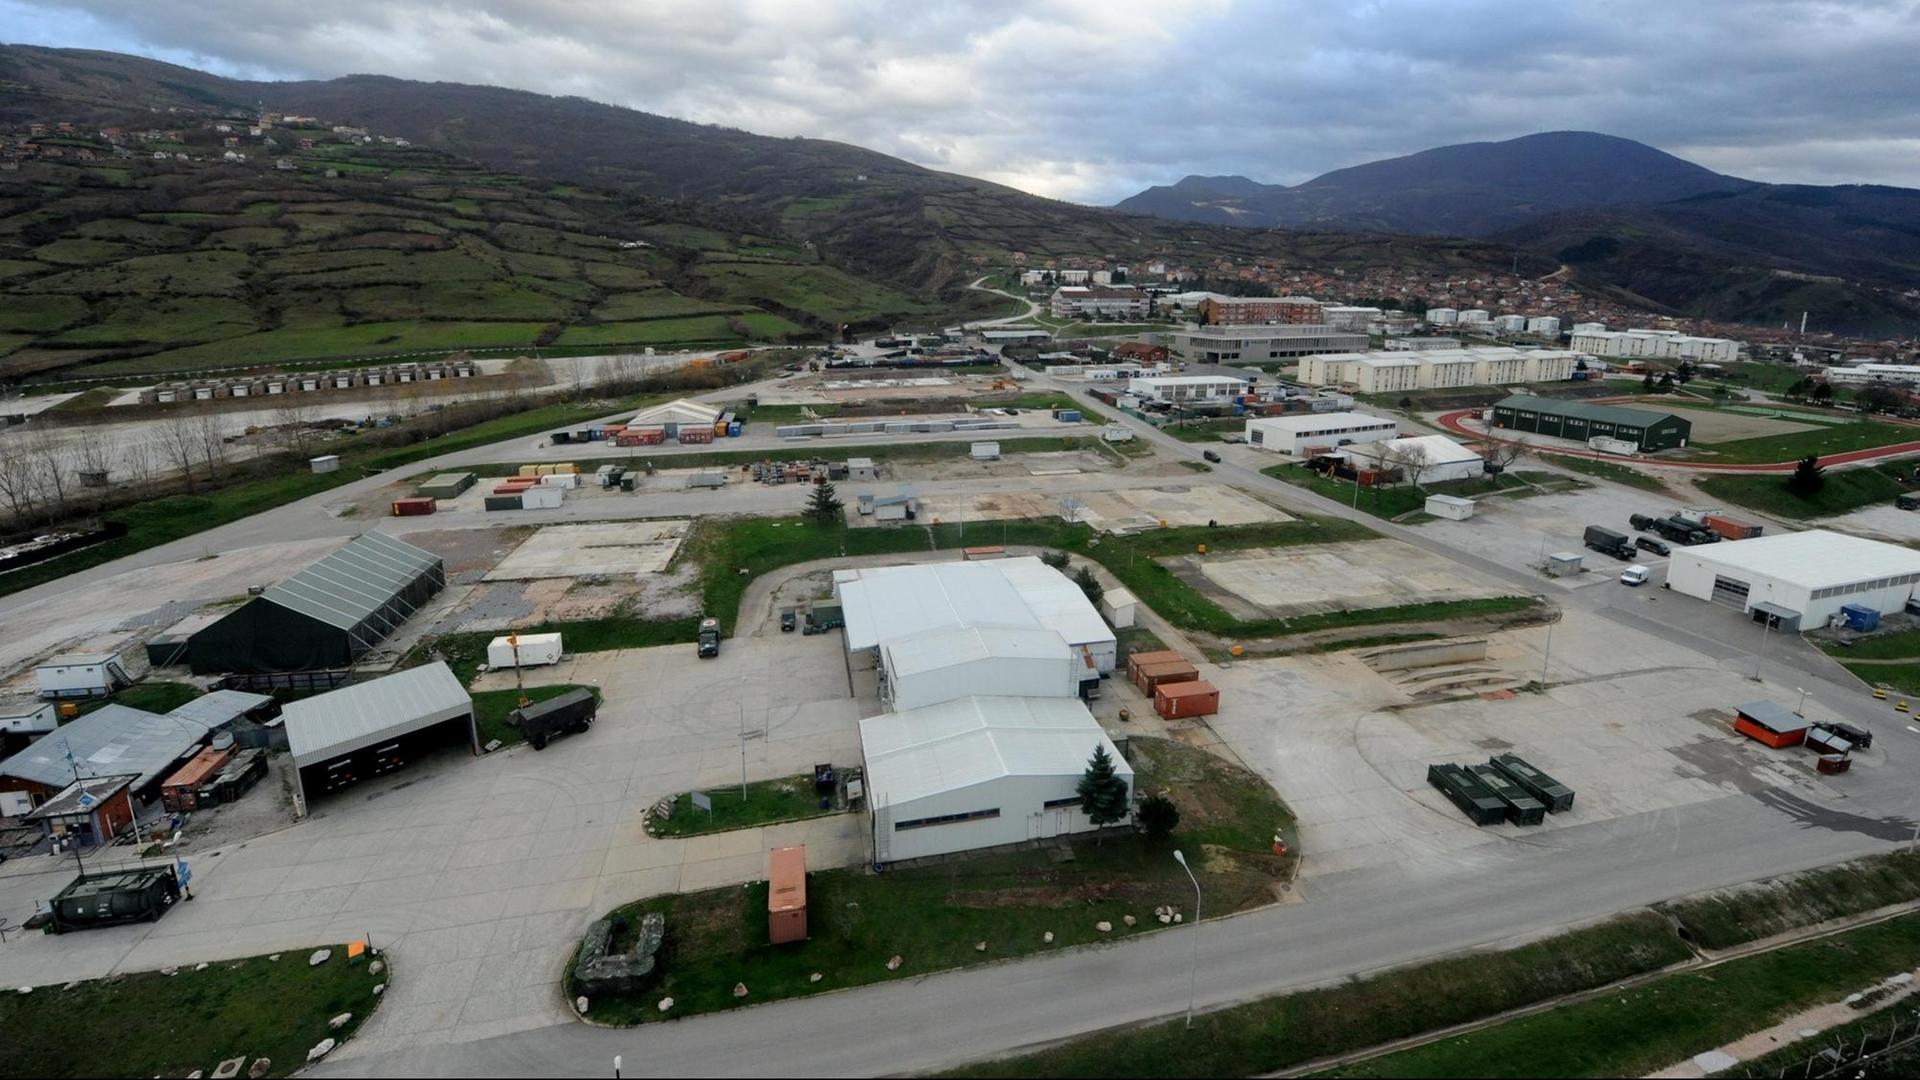 Das KFOR-Feldlager in Prizren im Kosovo, aufgenommen am Mittwoch (08.12.2010) aus einem Bundeswehr-Hubschrauber anlässlich eines vorweihnachtlichen Besuchs des Bundesverteidigungsministers Zu Guttenberg.